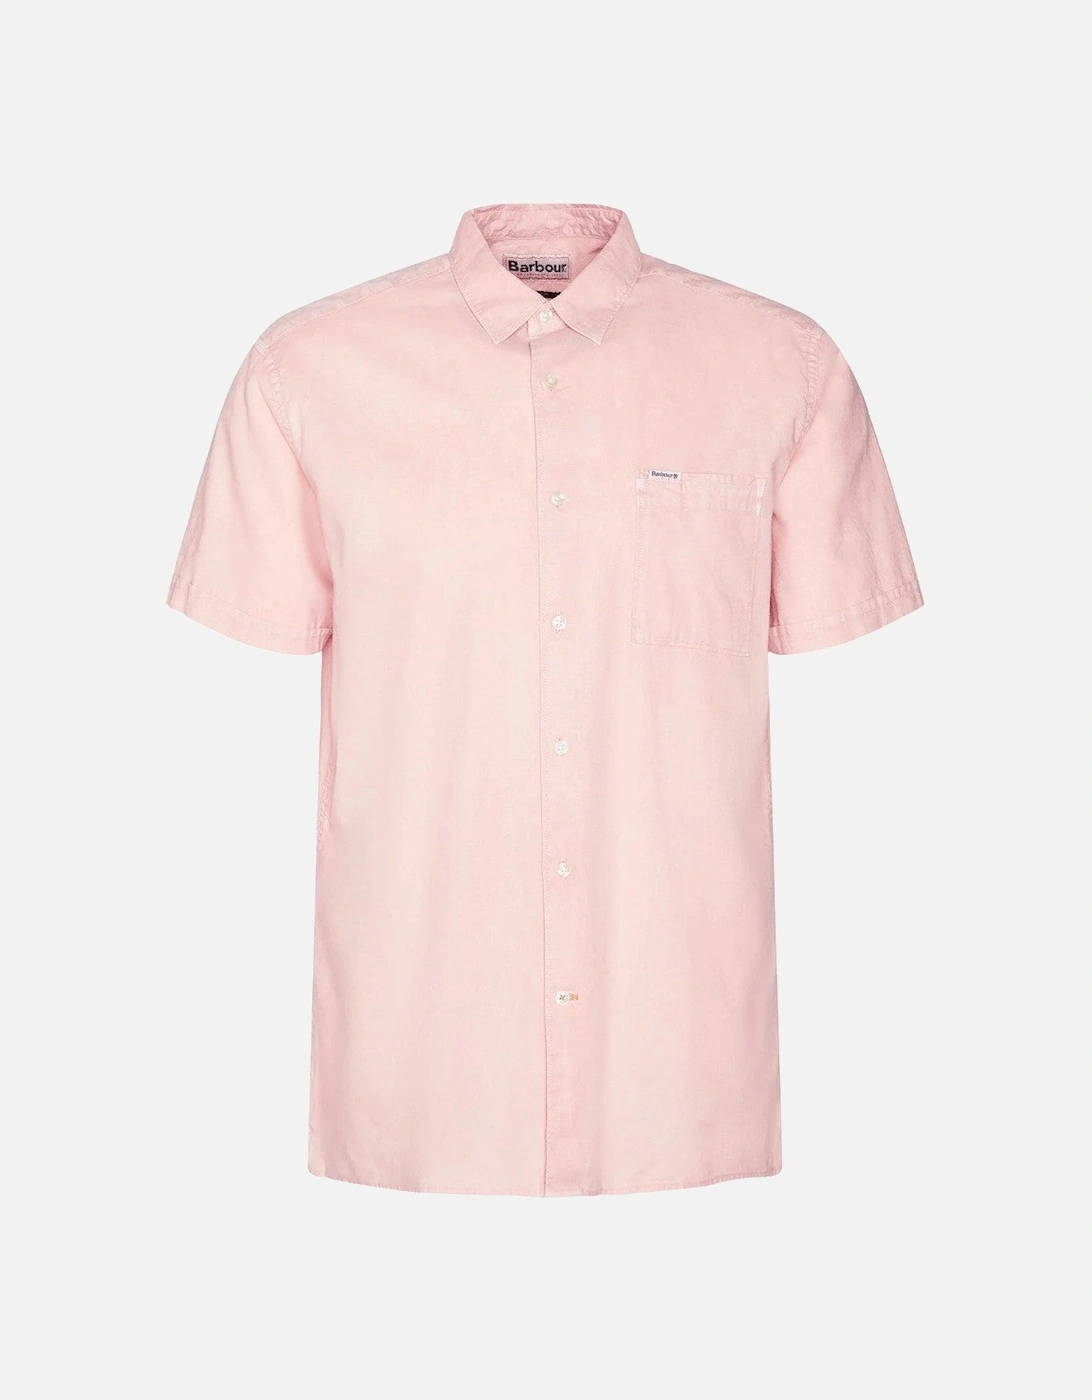 Terra Dye SS Shirt PI54 Pink Mist, 5 of 4